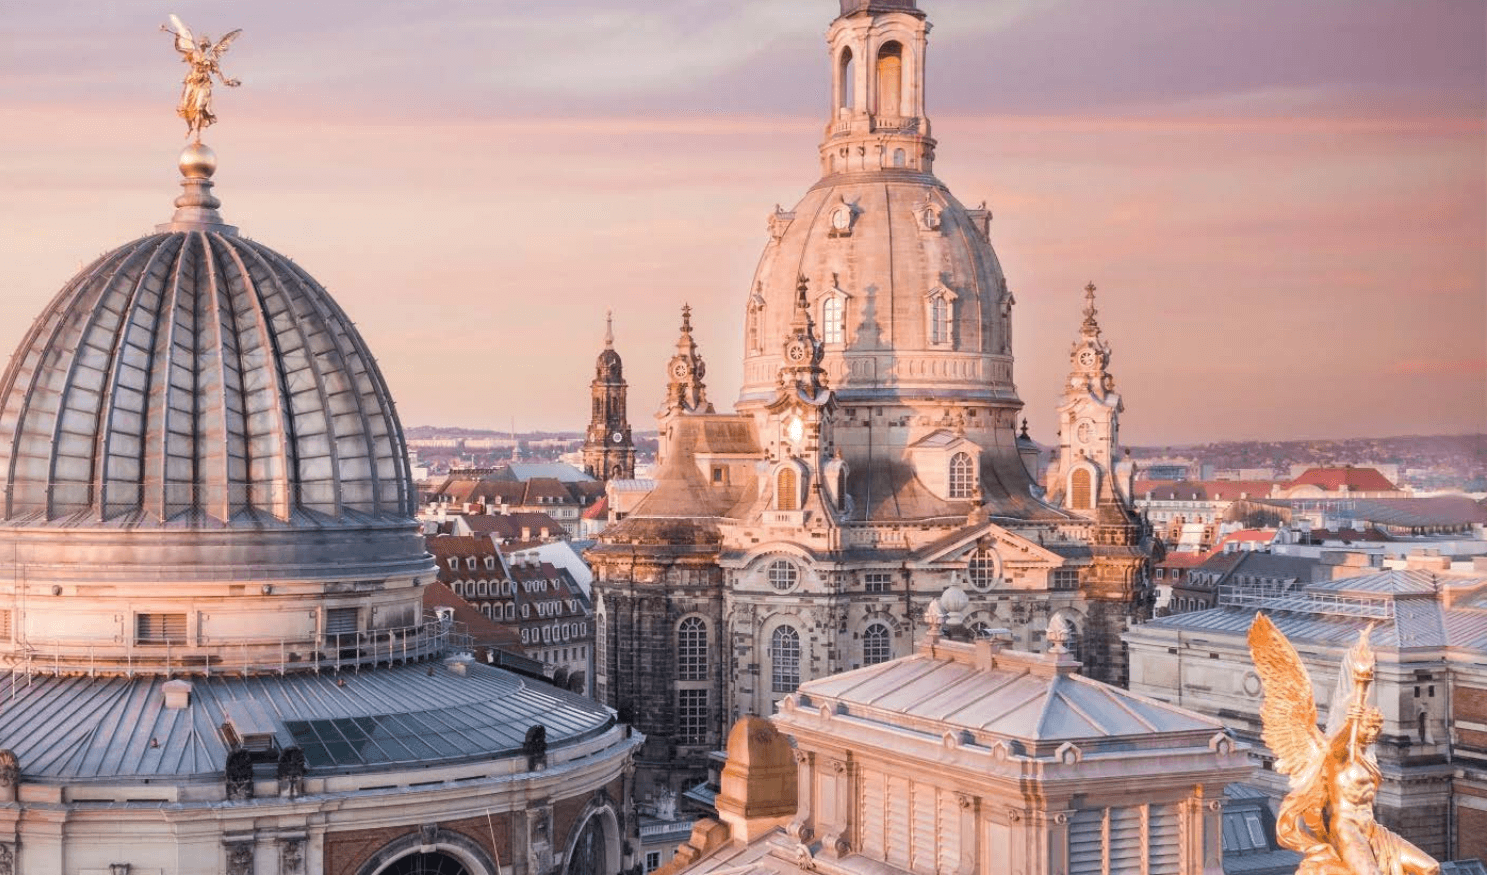 , Dresden Elbland – Vielfalt entdecken. Besucherhighlights 2021/22, Travelguide.at